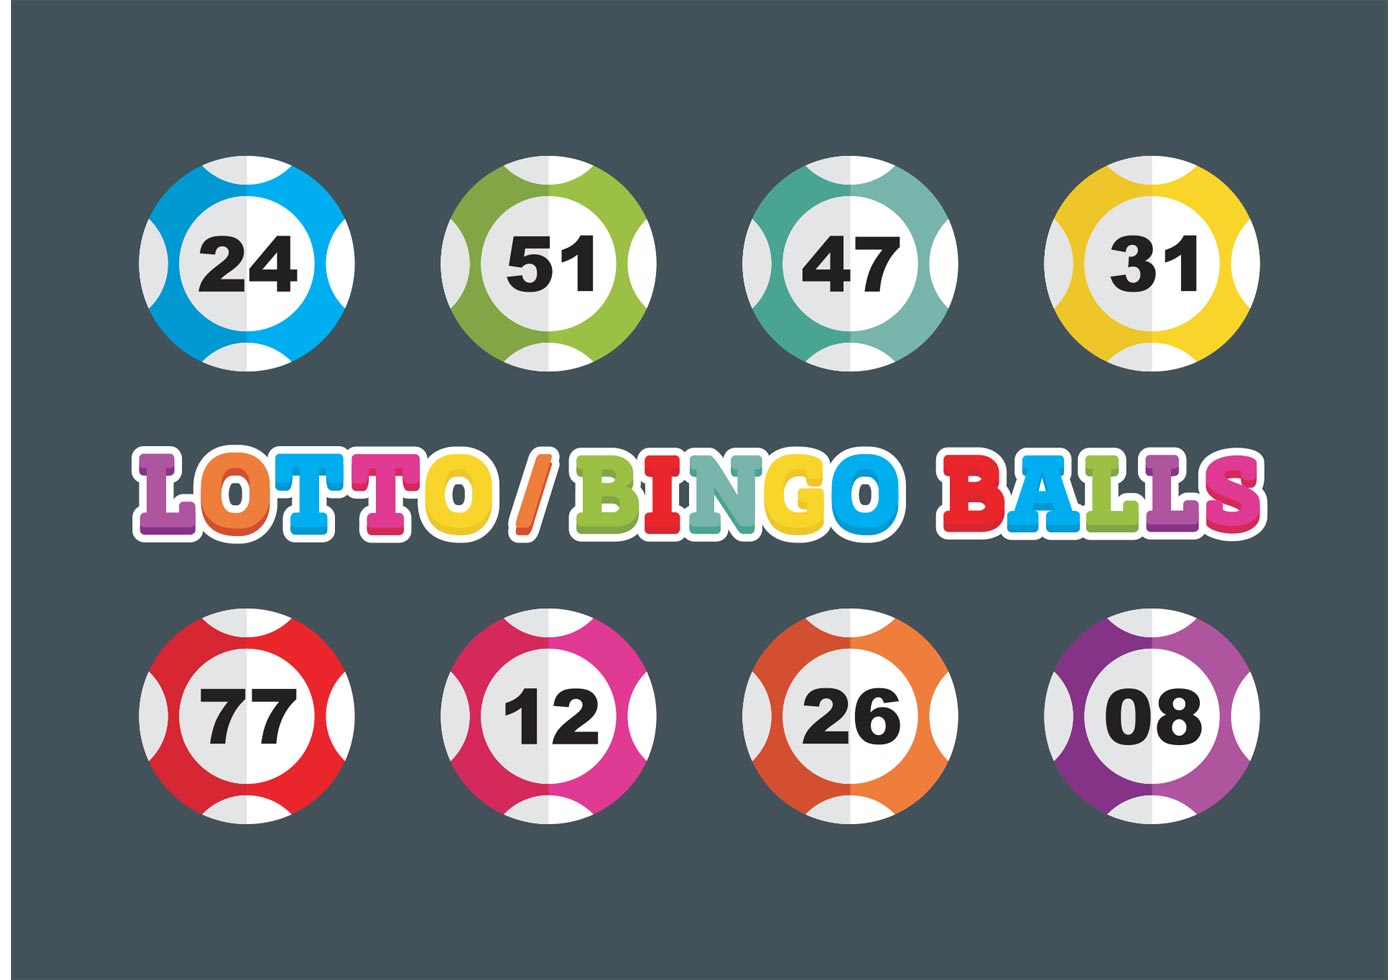 Lotto & Bingo Balls Vector Free - Download Free Vectors ...
